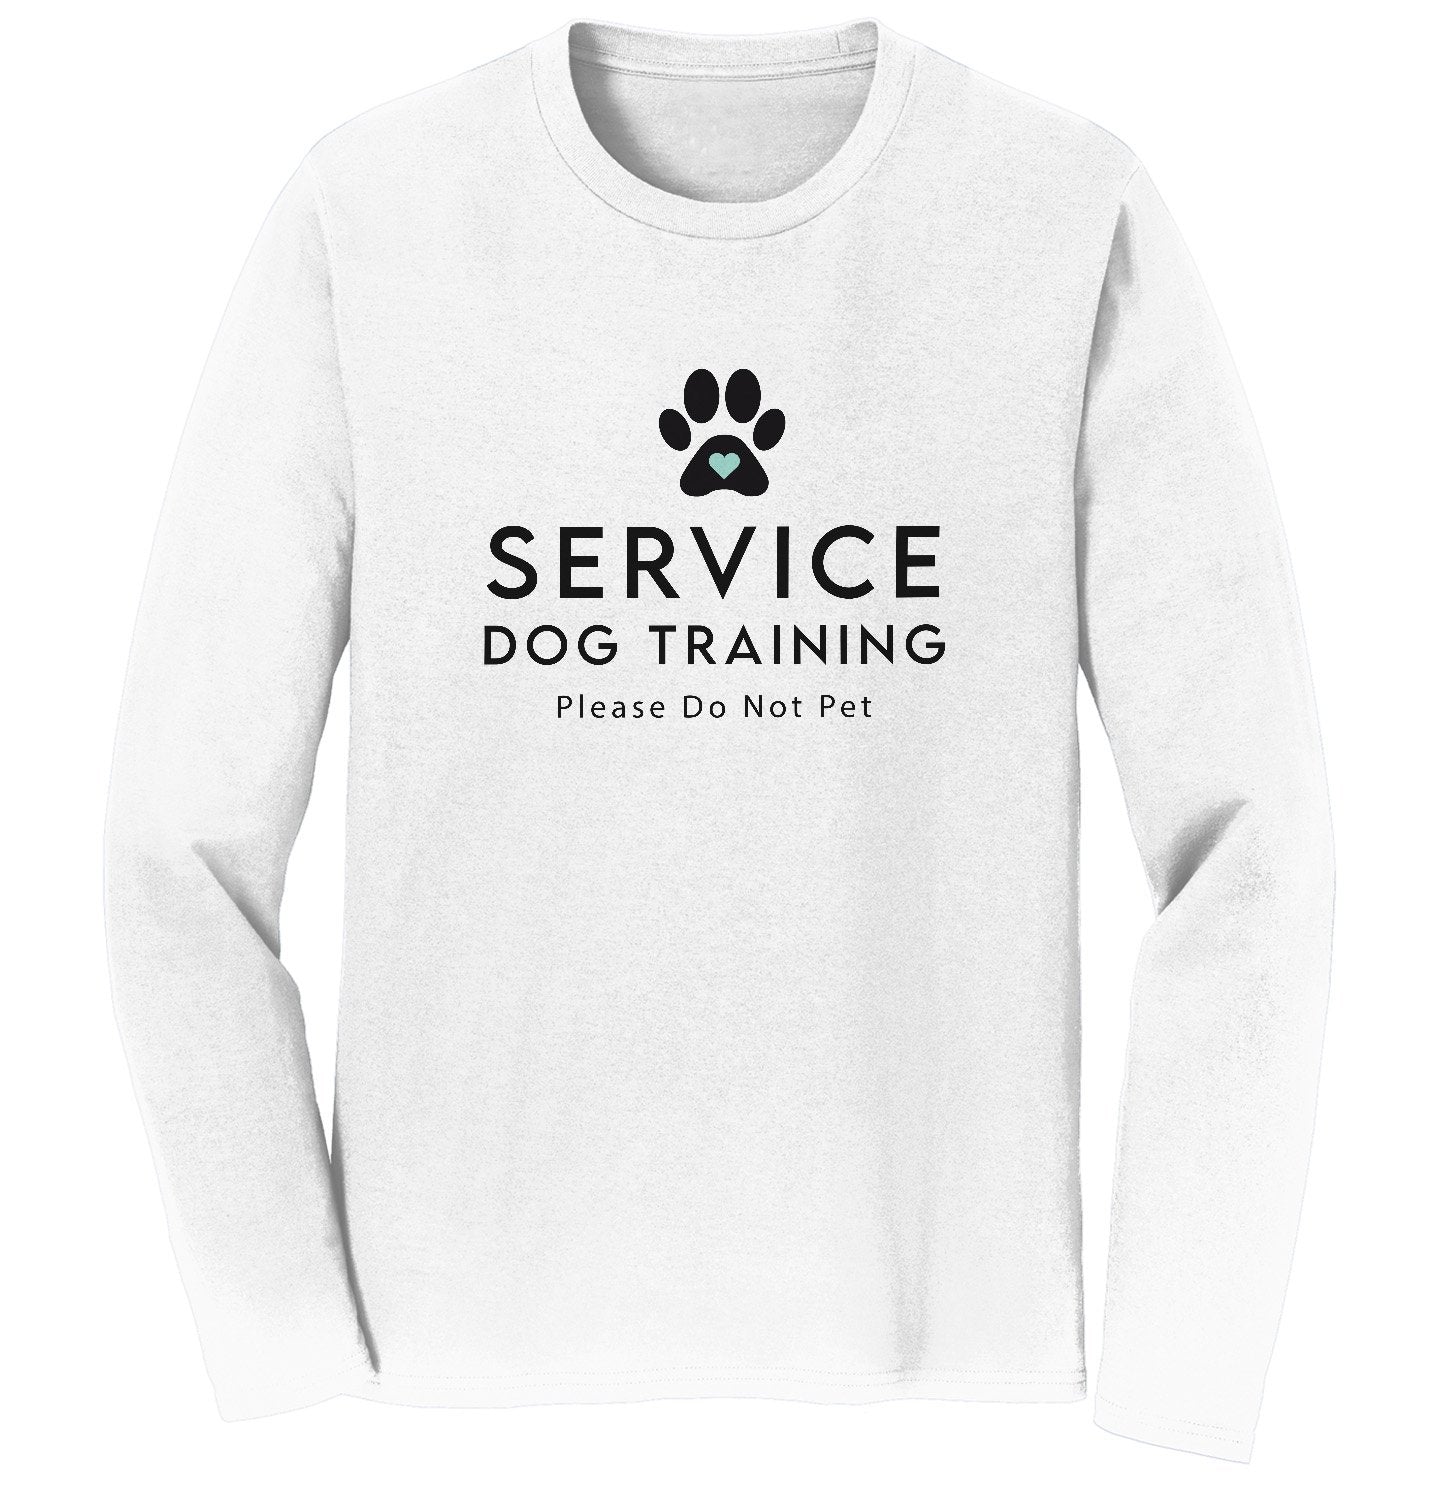 Service Dog Training - Adult Unisex Long Sleeve T-Shirt